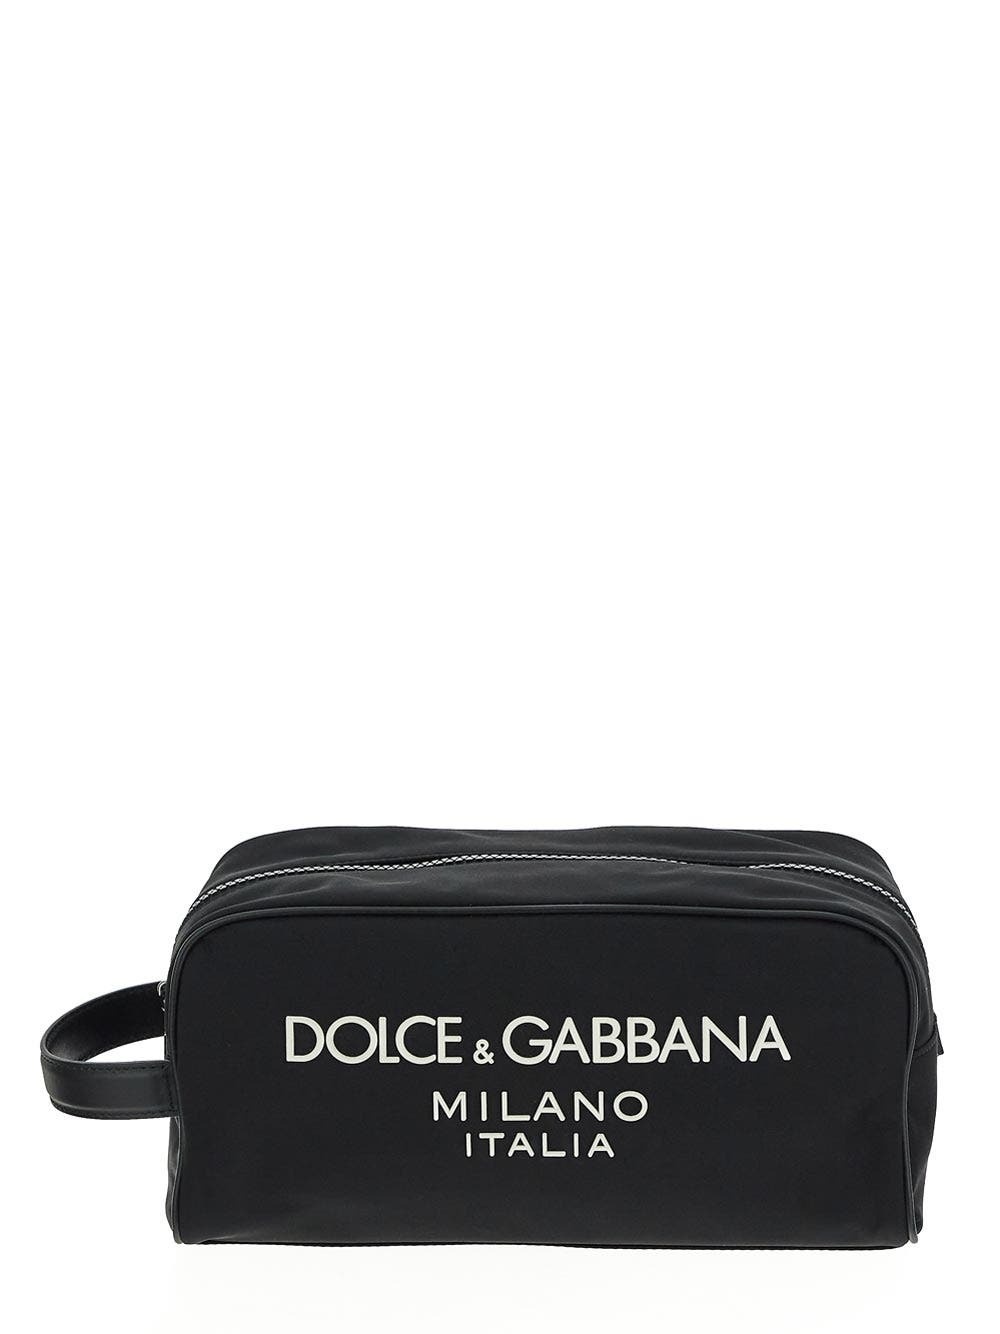 Photo: Dolce & Gabbana Logo Necessaire